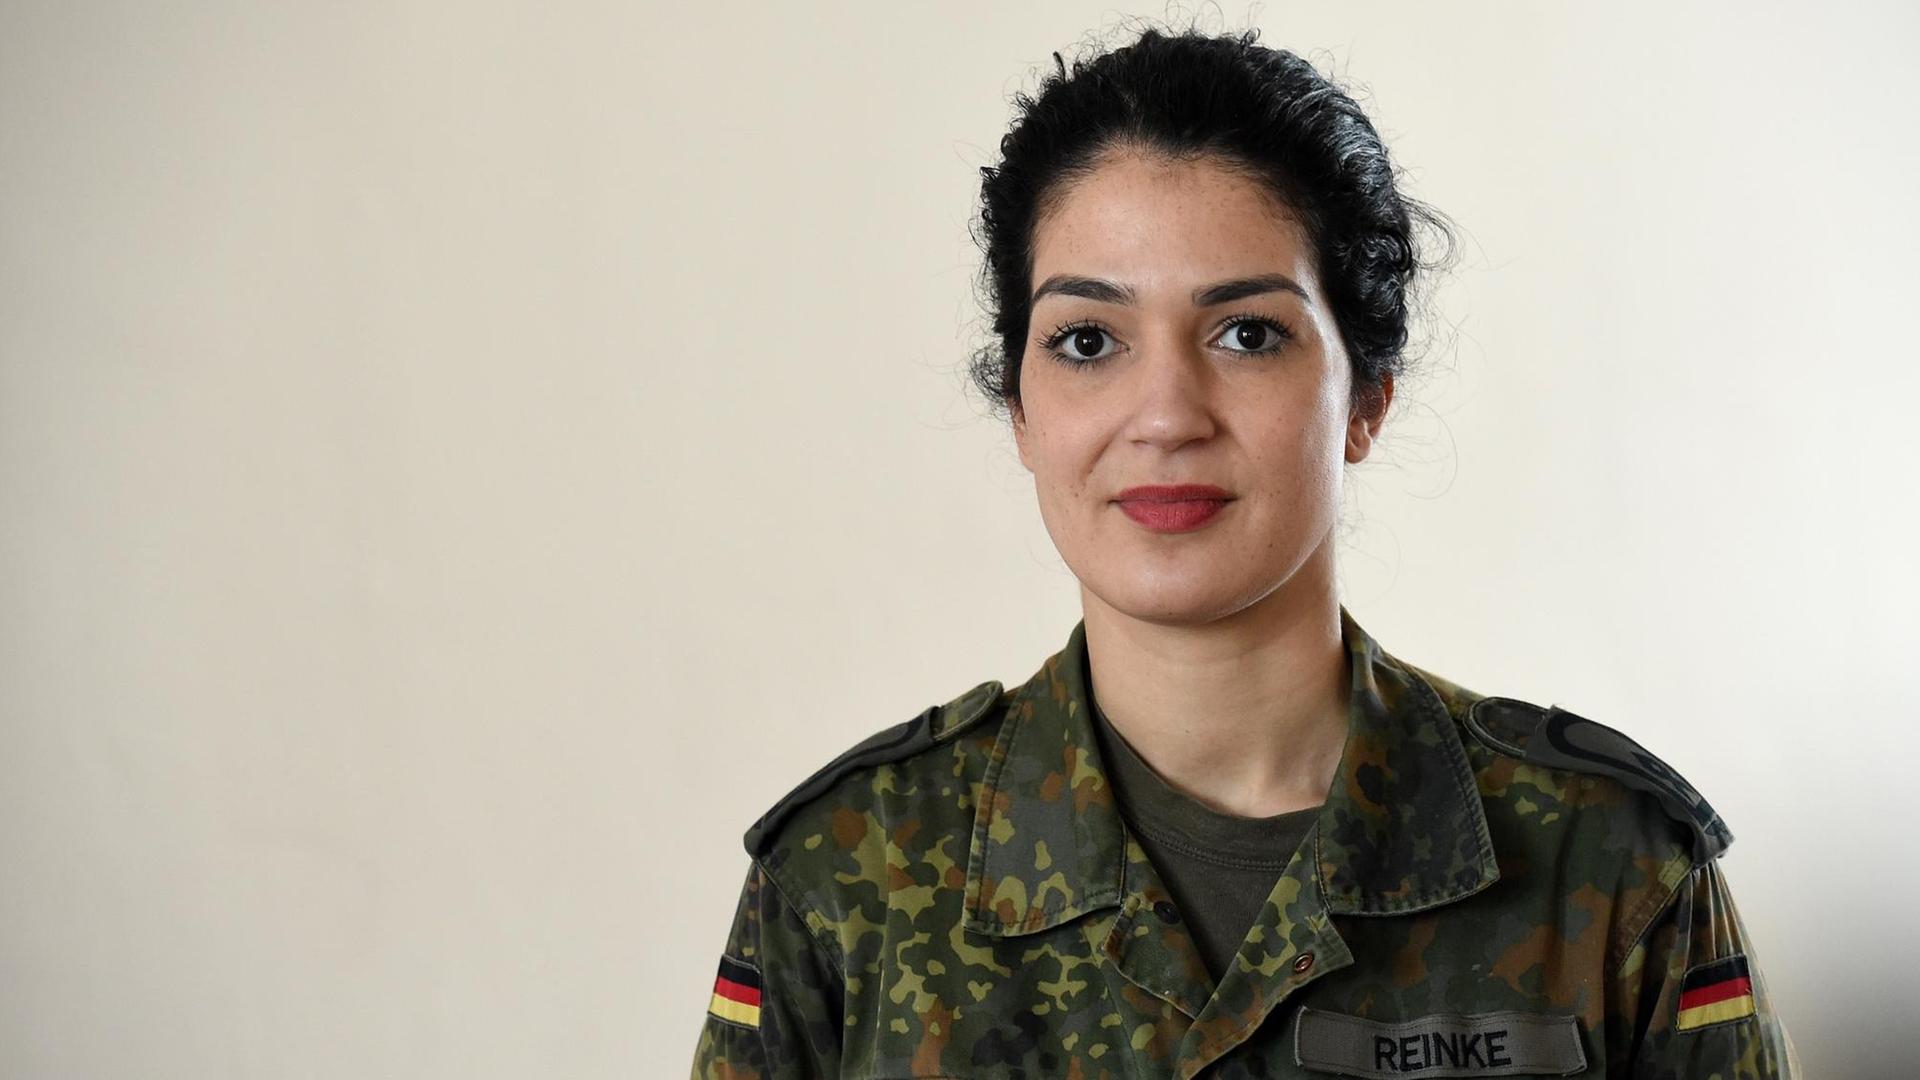 Die Soldatin Nariman Reinke, die mit einem Facebook-Post zu den Vorfällen in der Kölner Silvesternacht für Aufsehen sorgte.